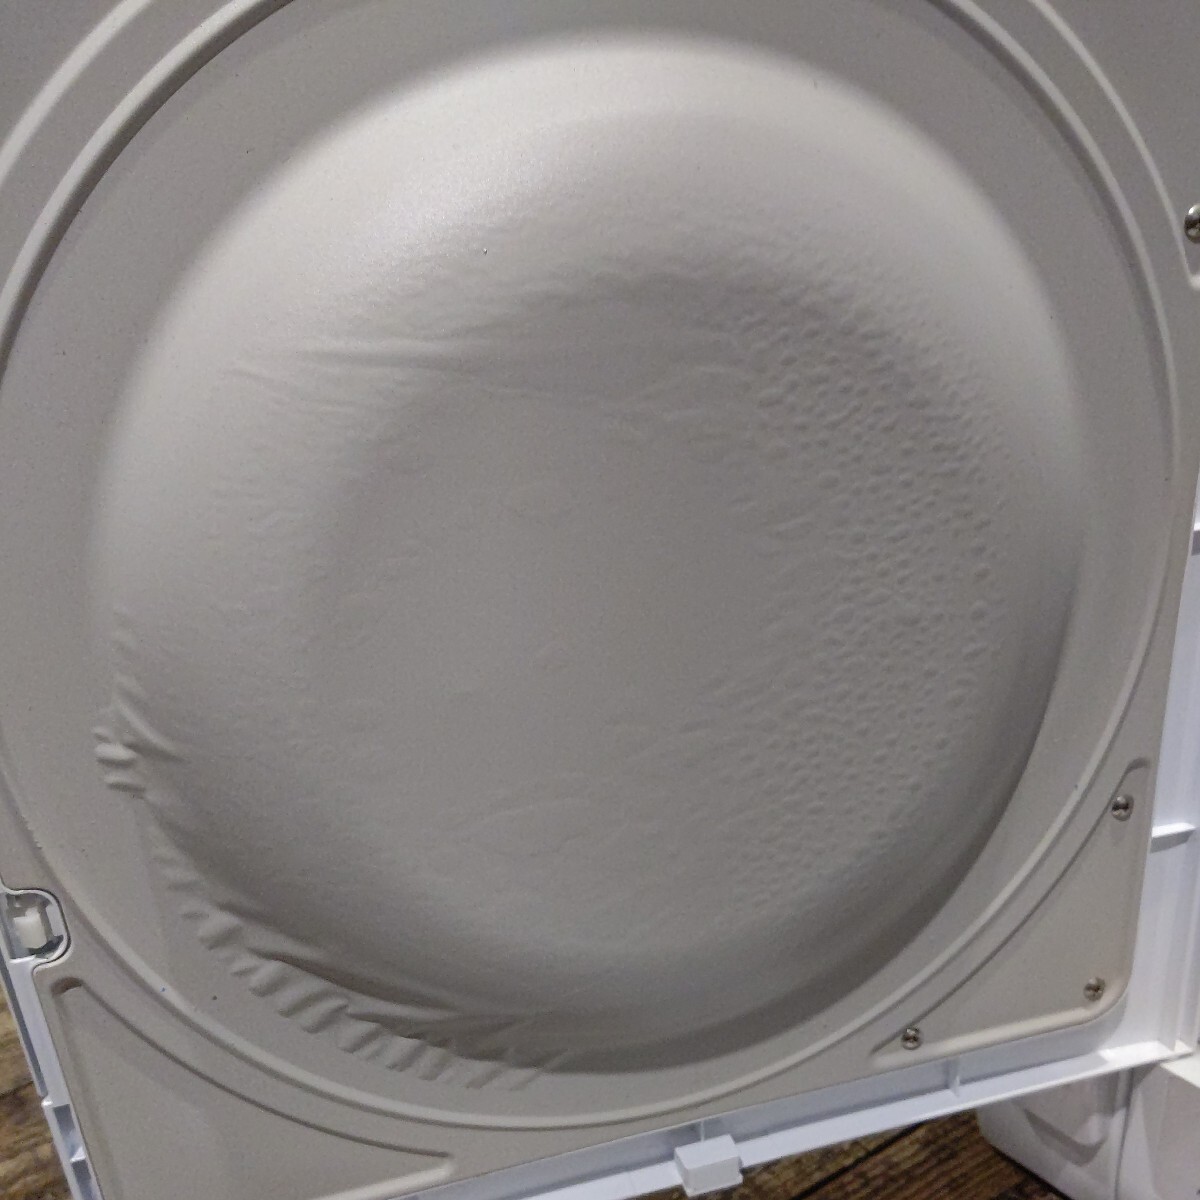 HITACHI Hitachi осушение форма электрический сушильная машина подставка есть DE-N50WV чисто-белый белый 2017 год производства 